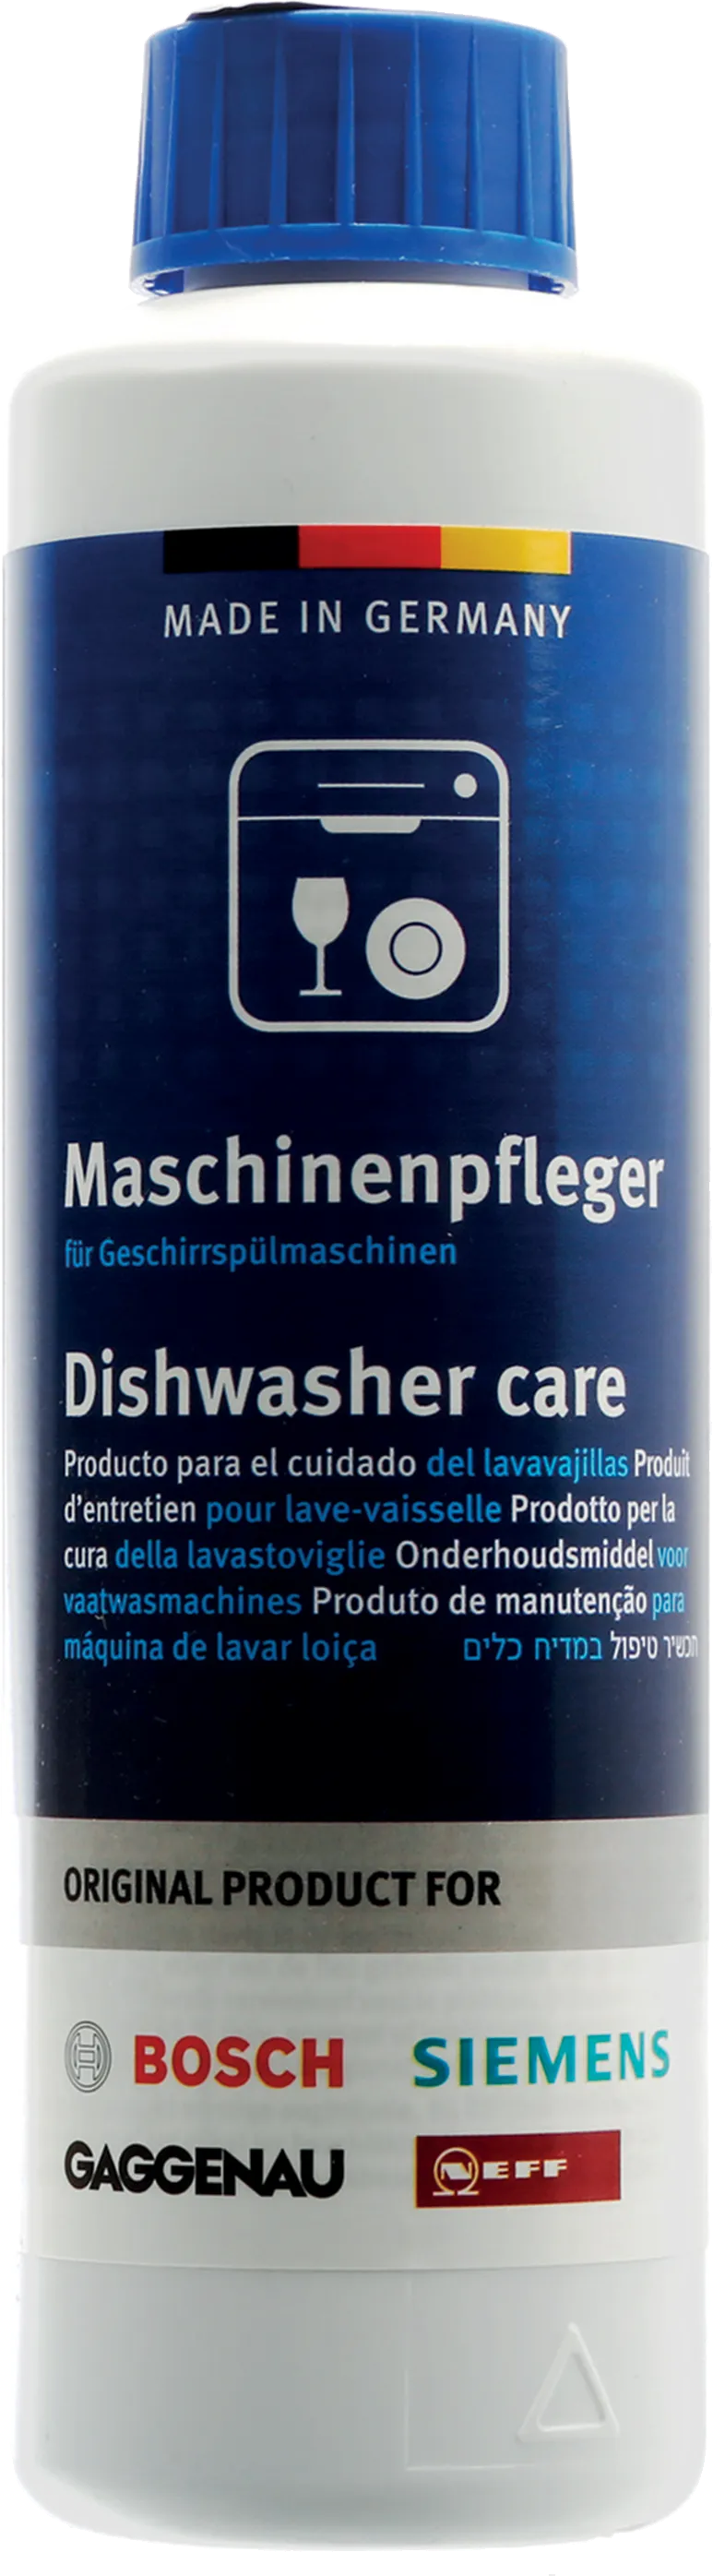 Dishwasher Care 